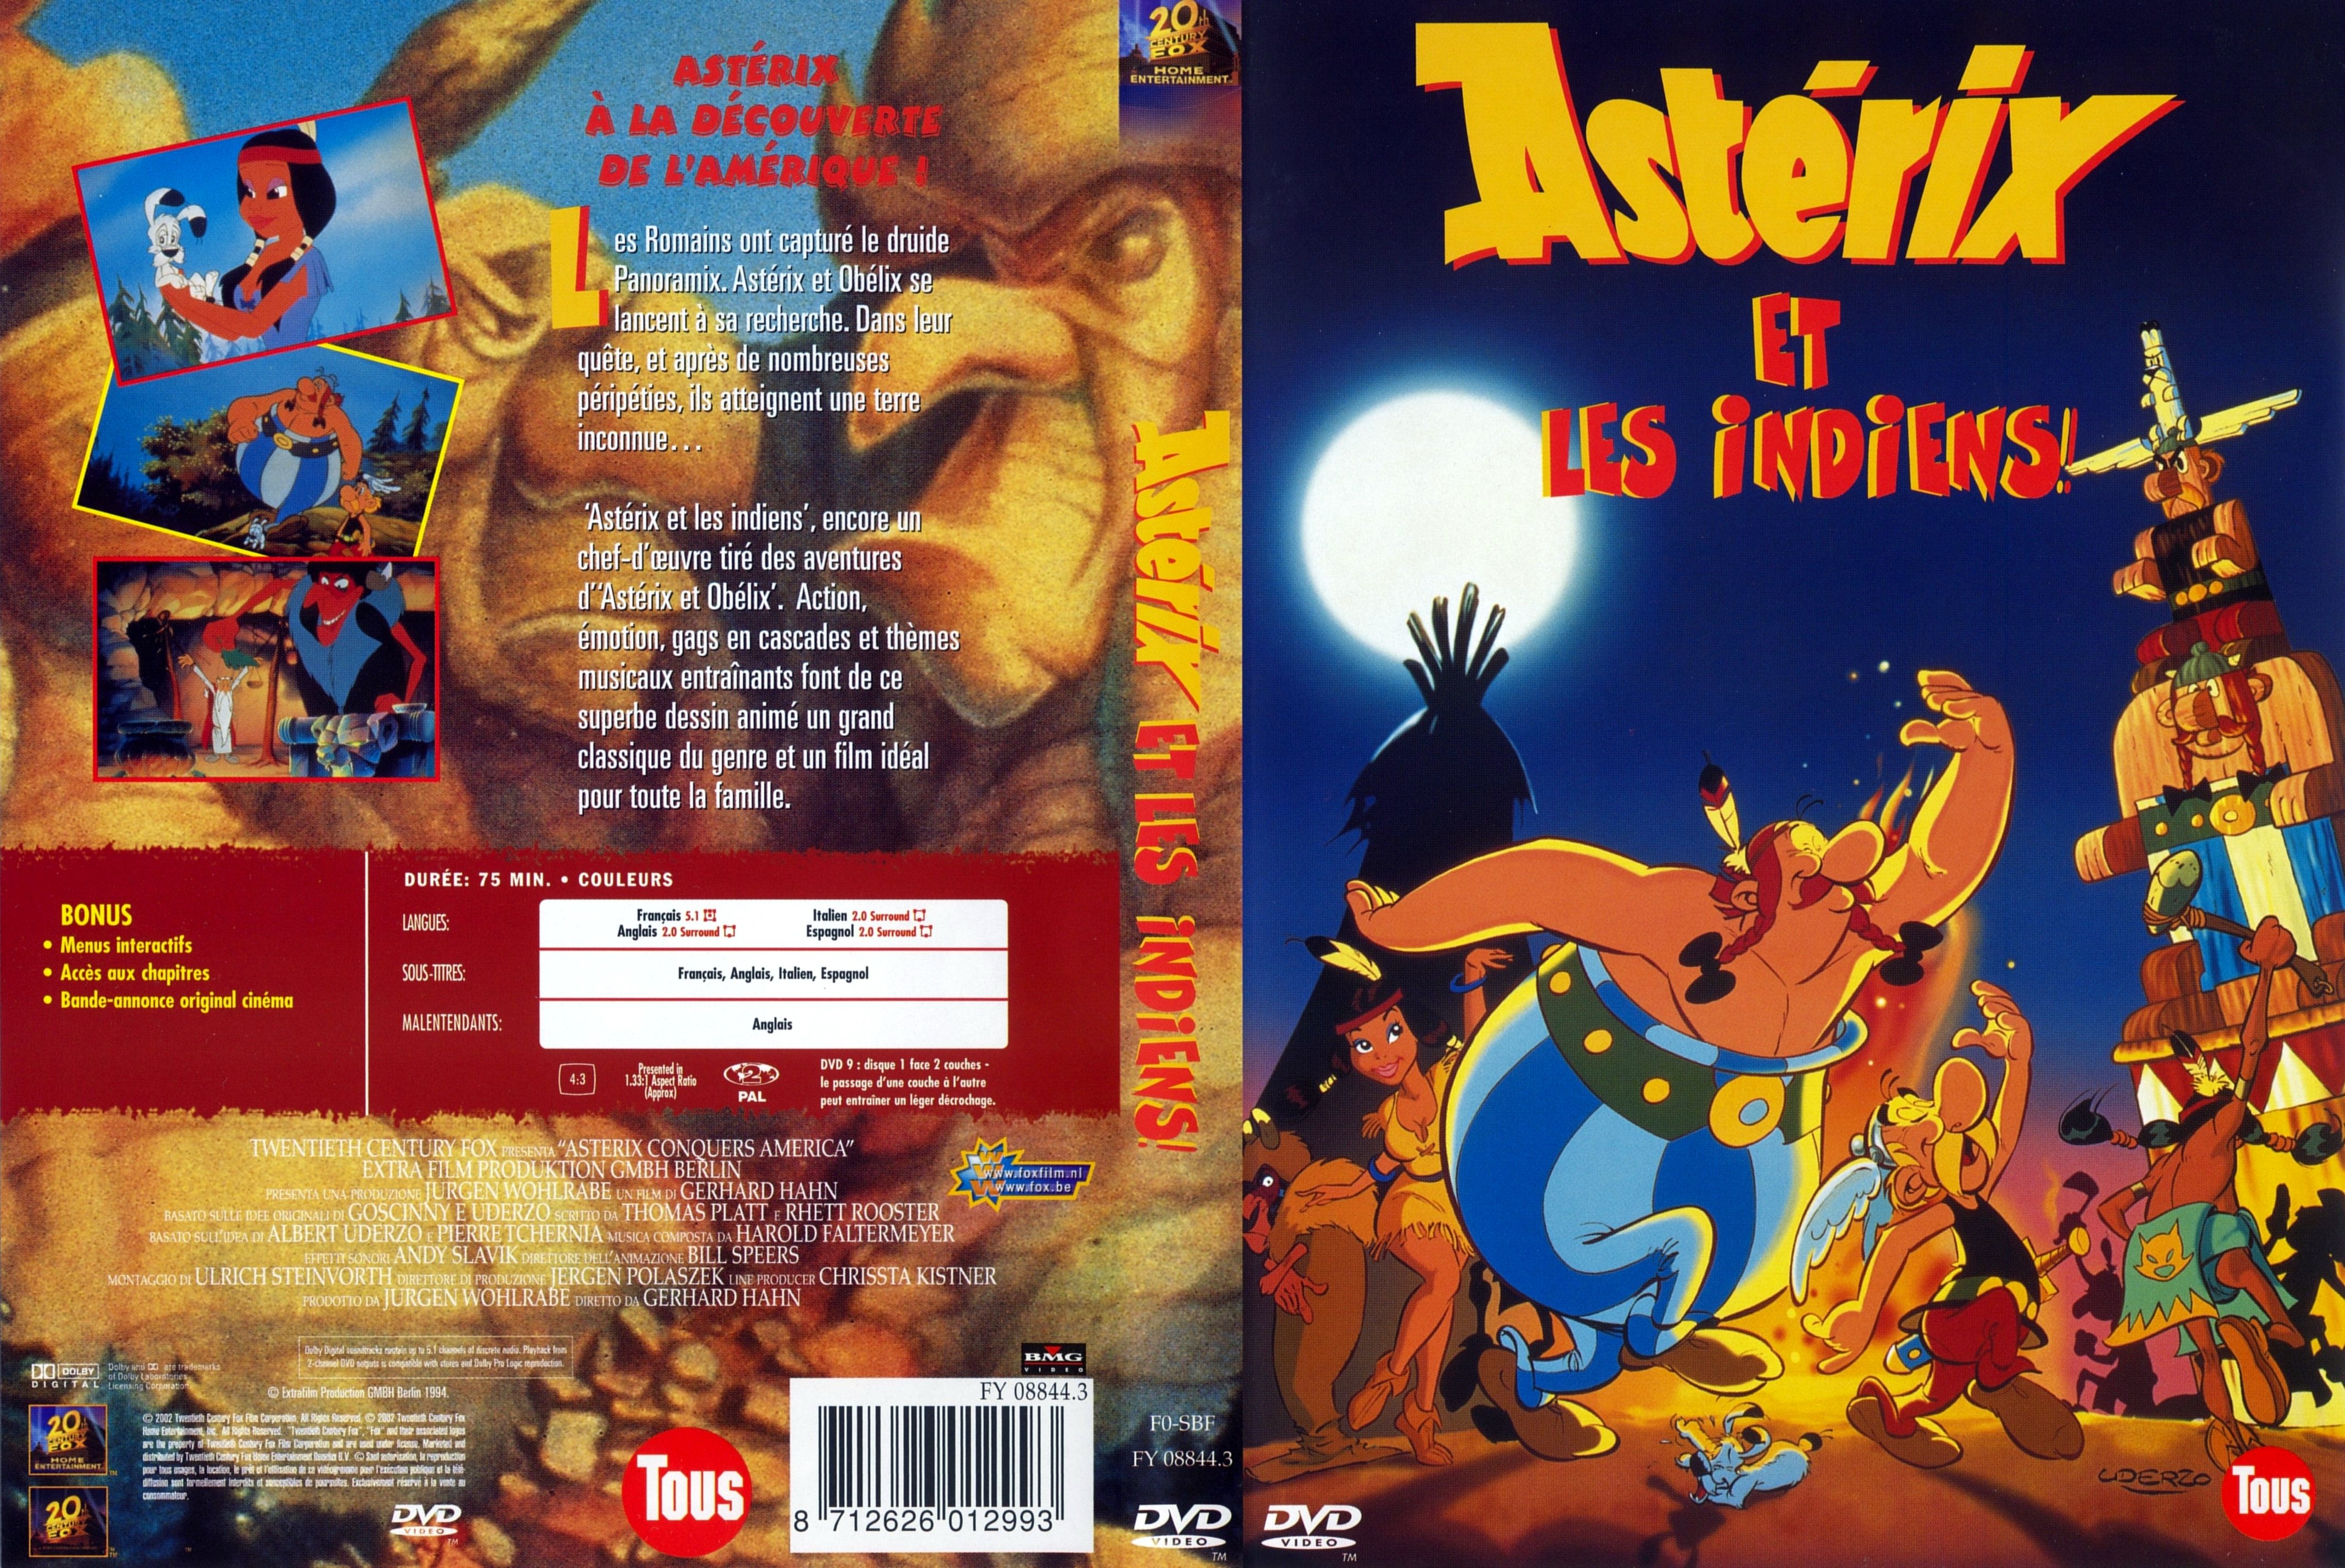 Jaquette DVD Asterix et les indiens